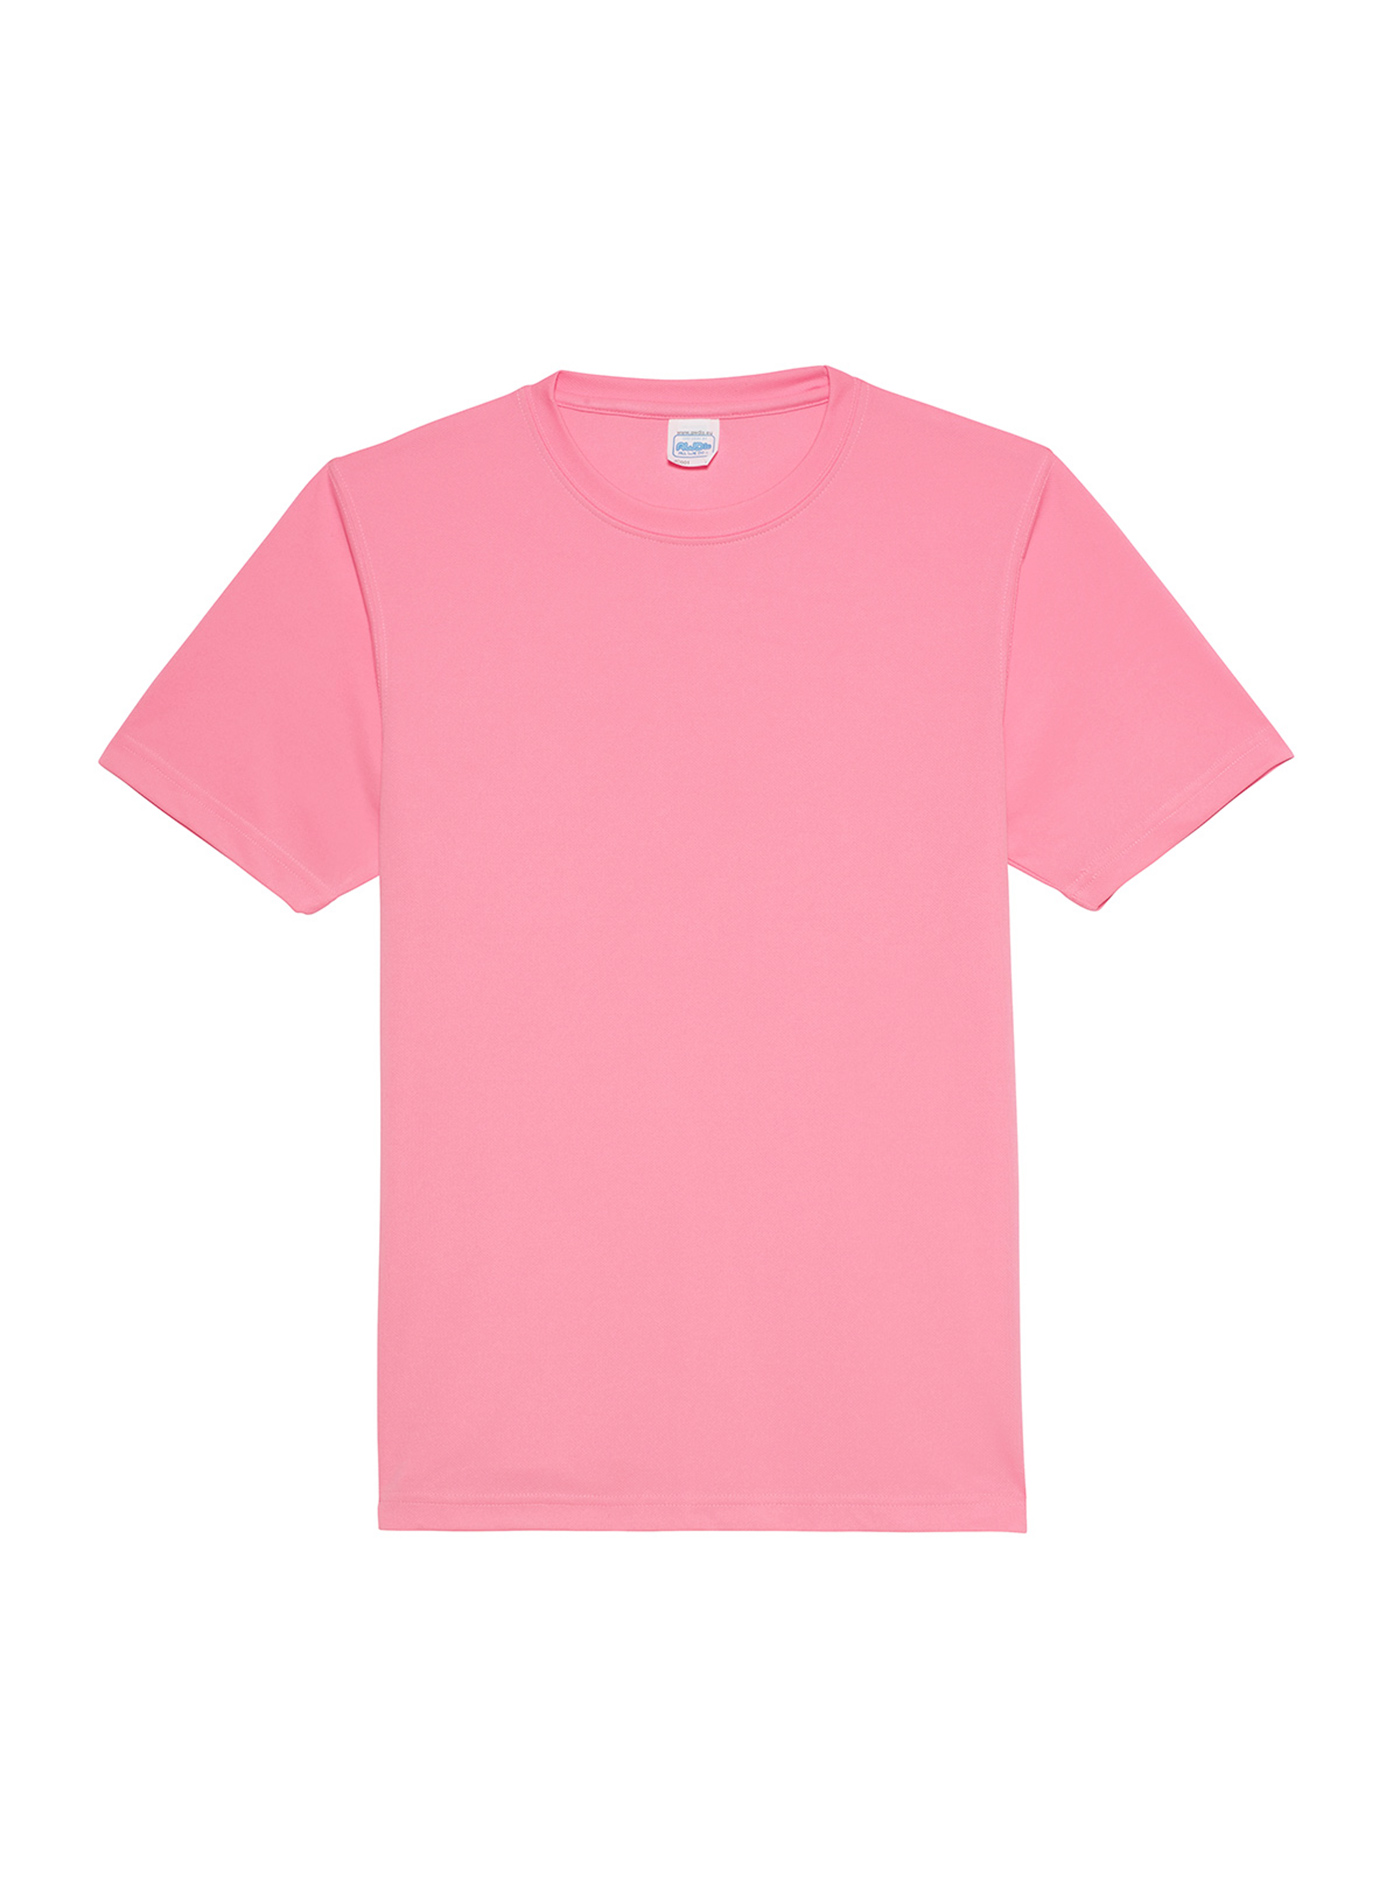 Unisex tričko Just Ts Neonlight - Neonově růžová L